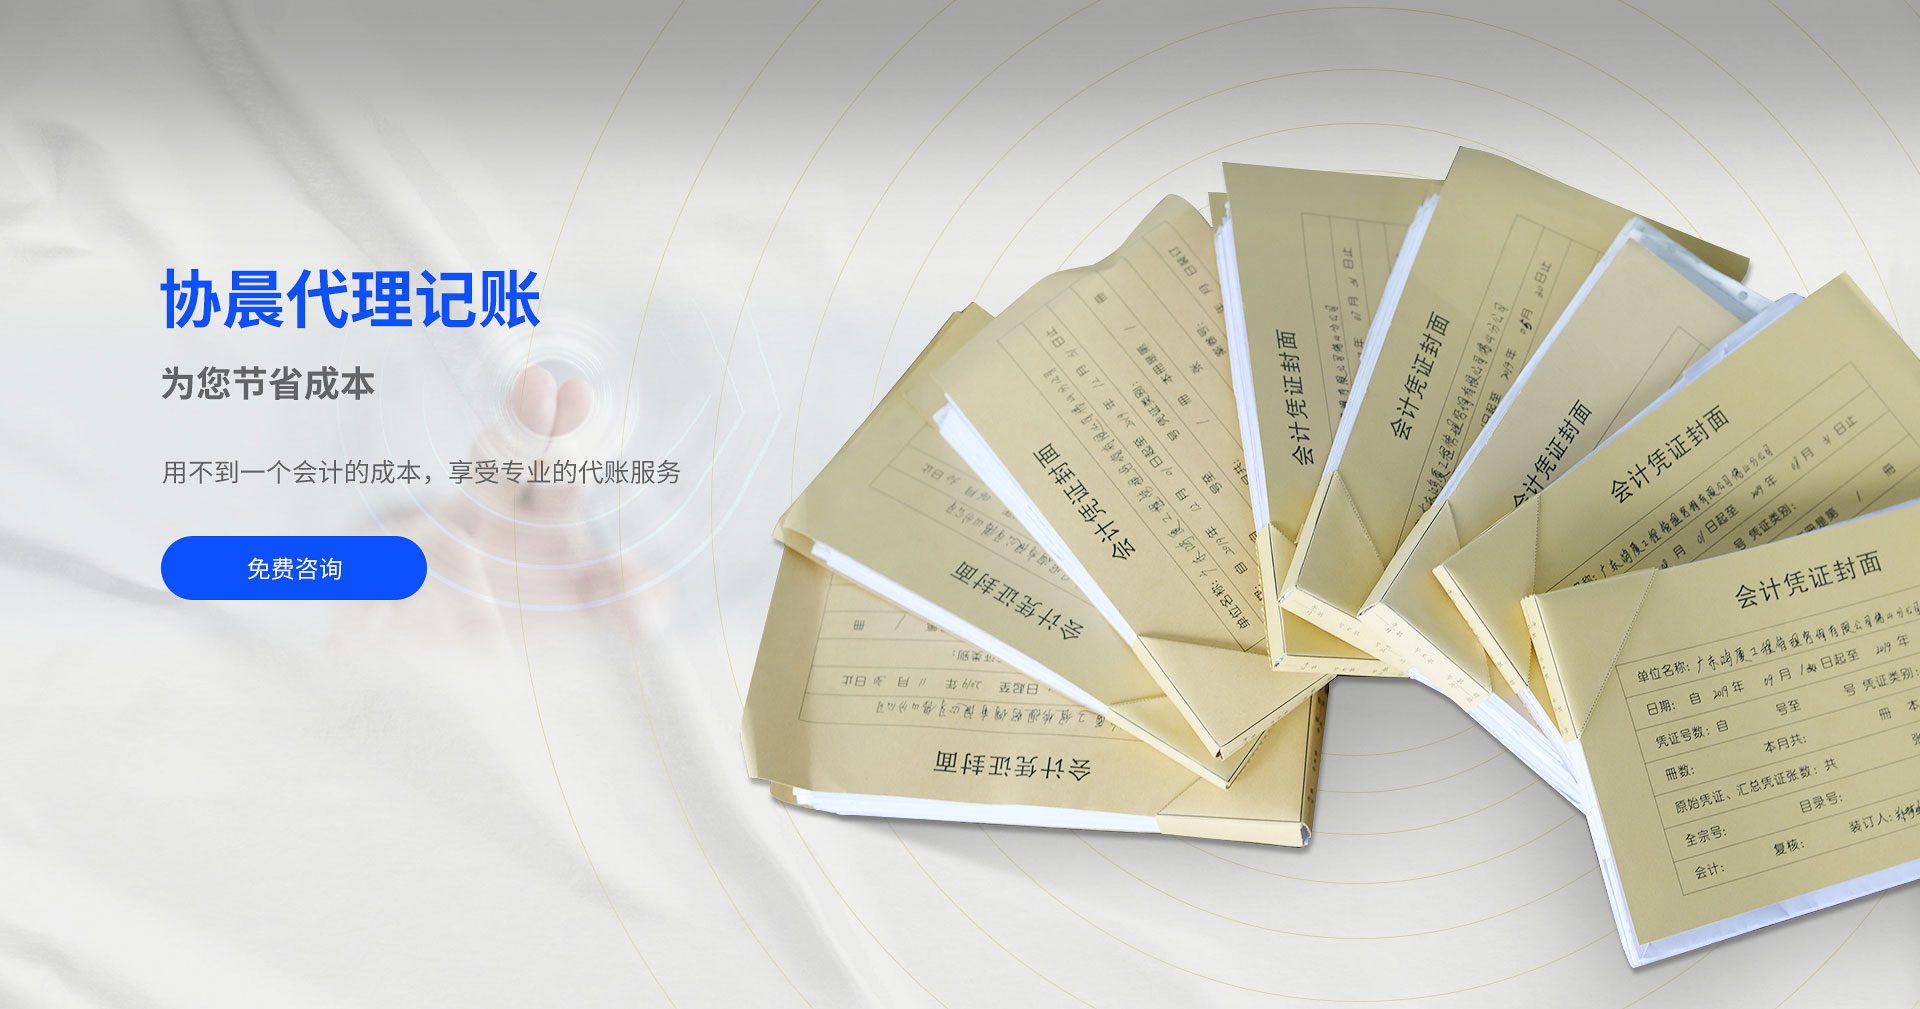 广州荔湾商标注册代理 佛山市协晨企业服务有限公司